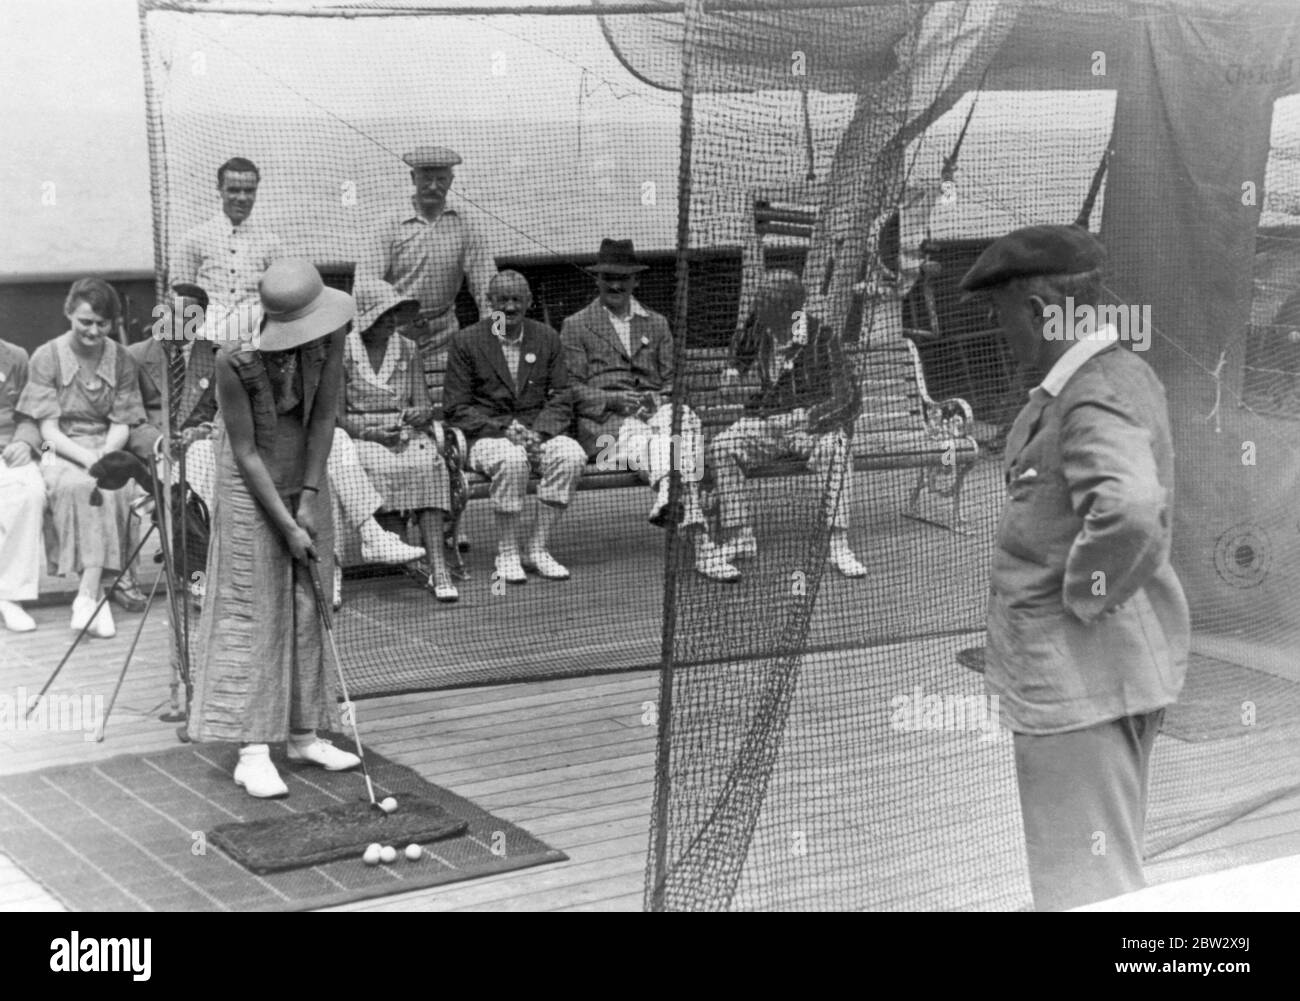 Jeux de plate-forme à bord d'un paquebot dans les années 1930. Ici, une femme participe à un concours de golf. Elle vise à frapper la balle à une cible peinte sur le filet arrière (à droite). Banque D'Images